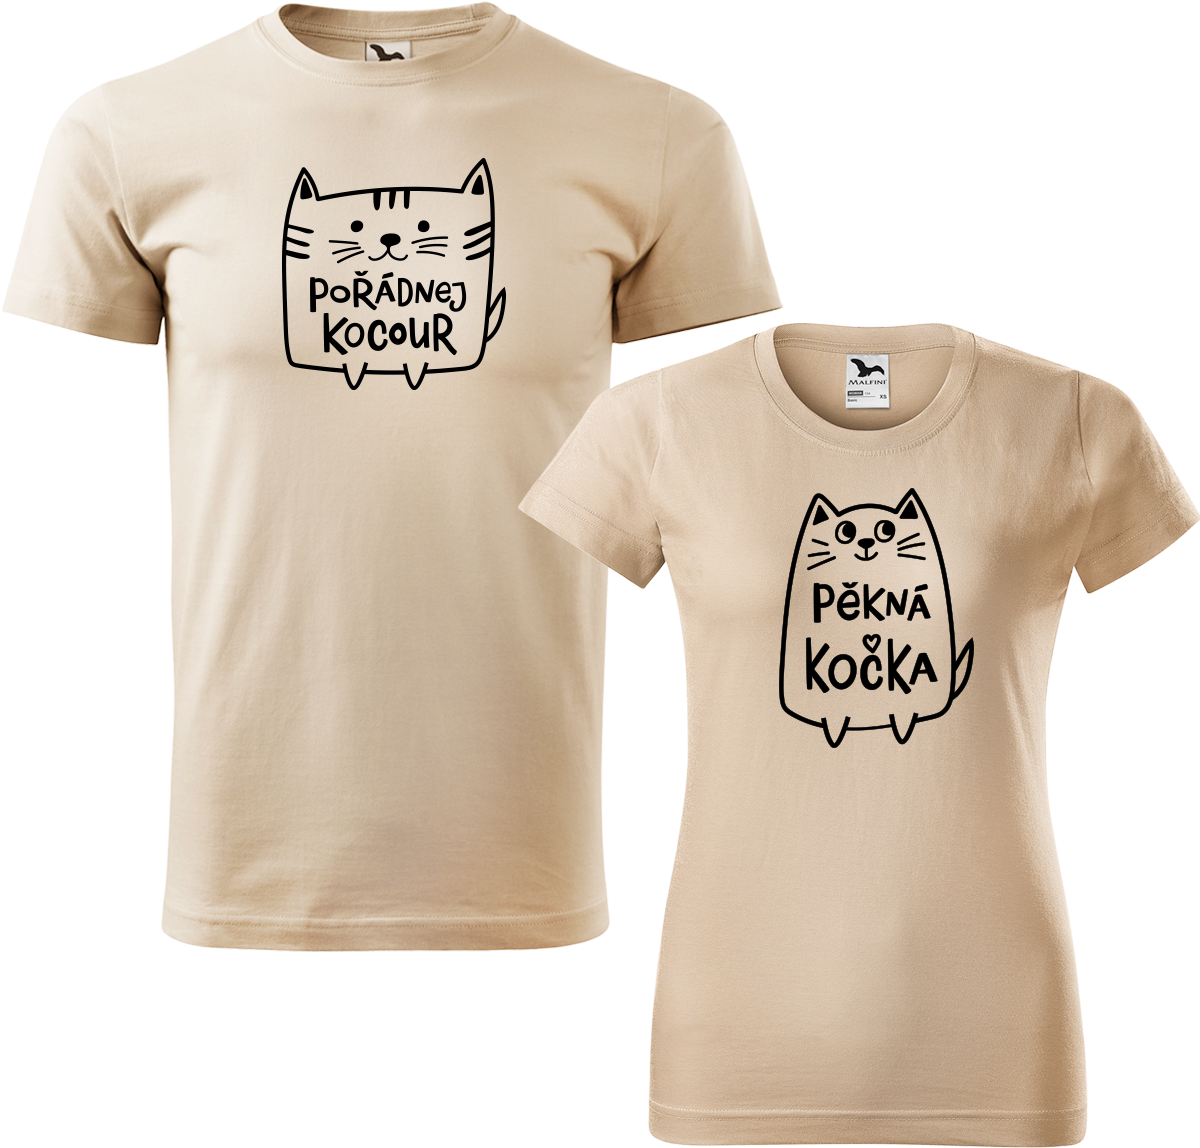 Trička pro páry - Pořádnej kocour a pěkná kočka Barva: Písková (08), Velikost dámské tričko: L, Velikost pánské tričko: L